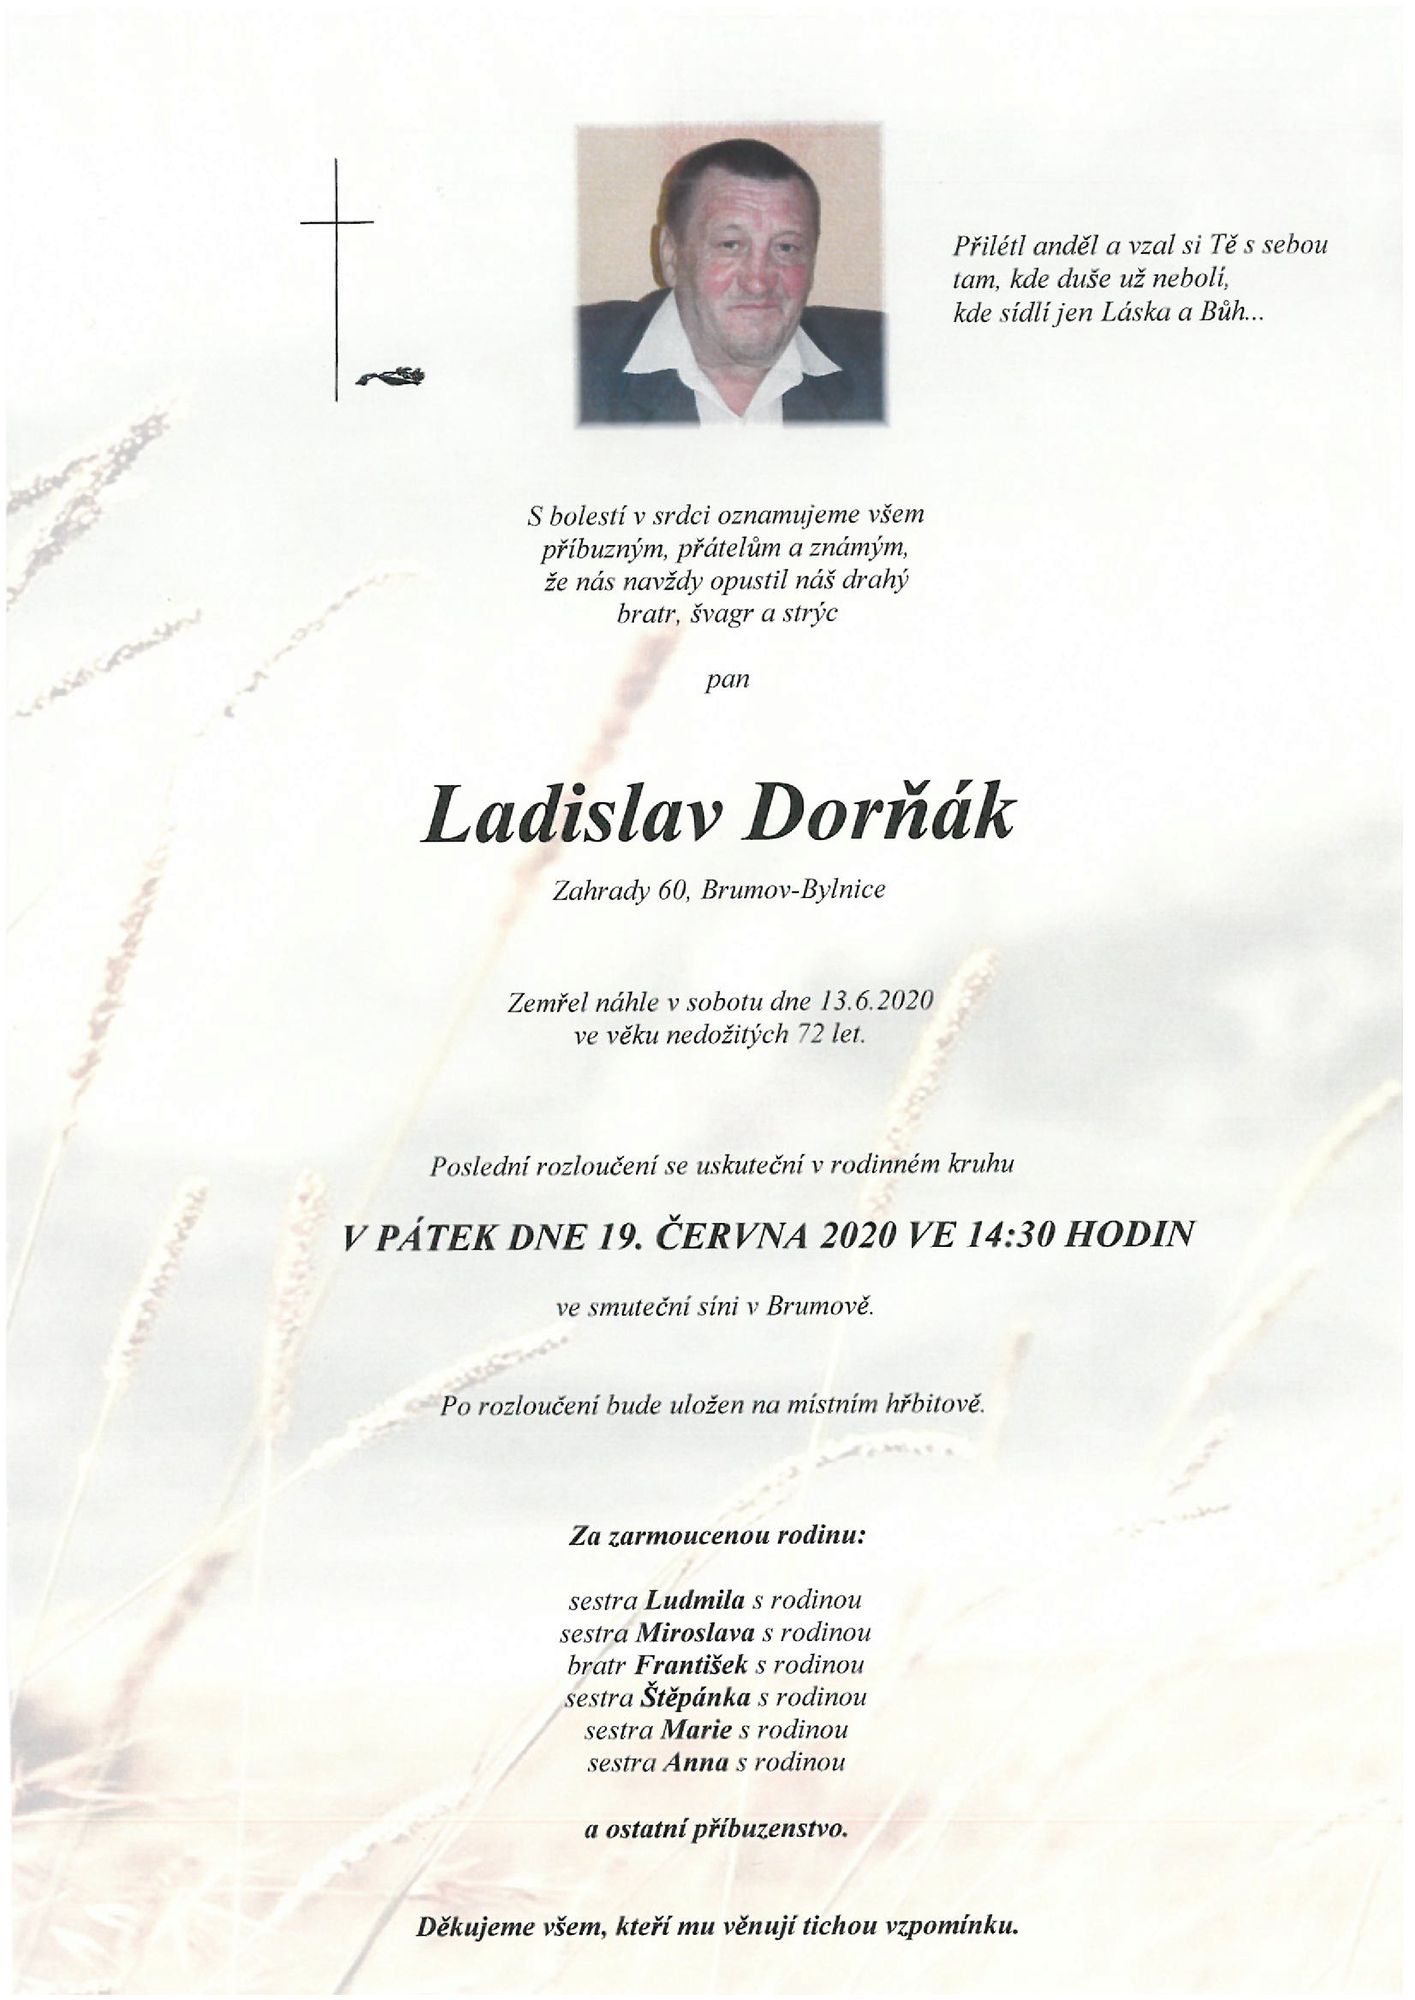 Ladislav Dorňák